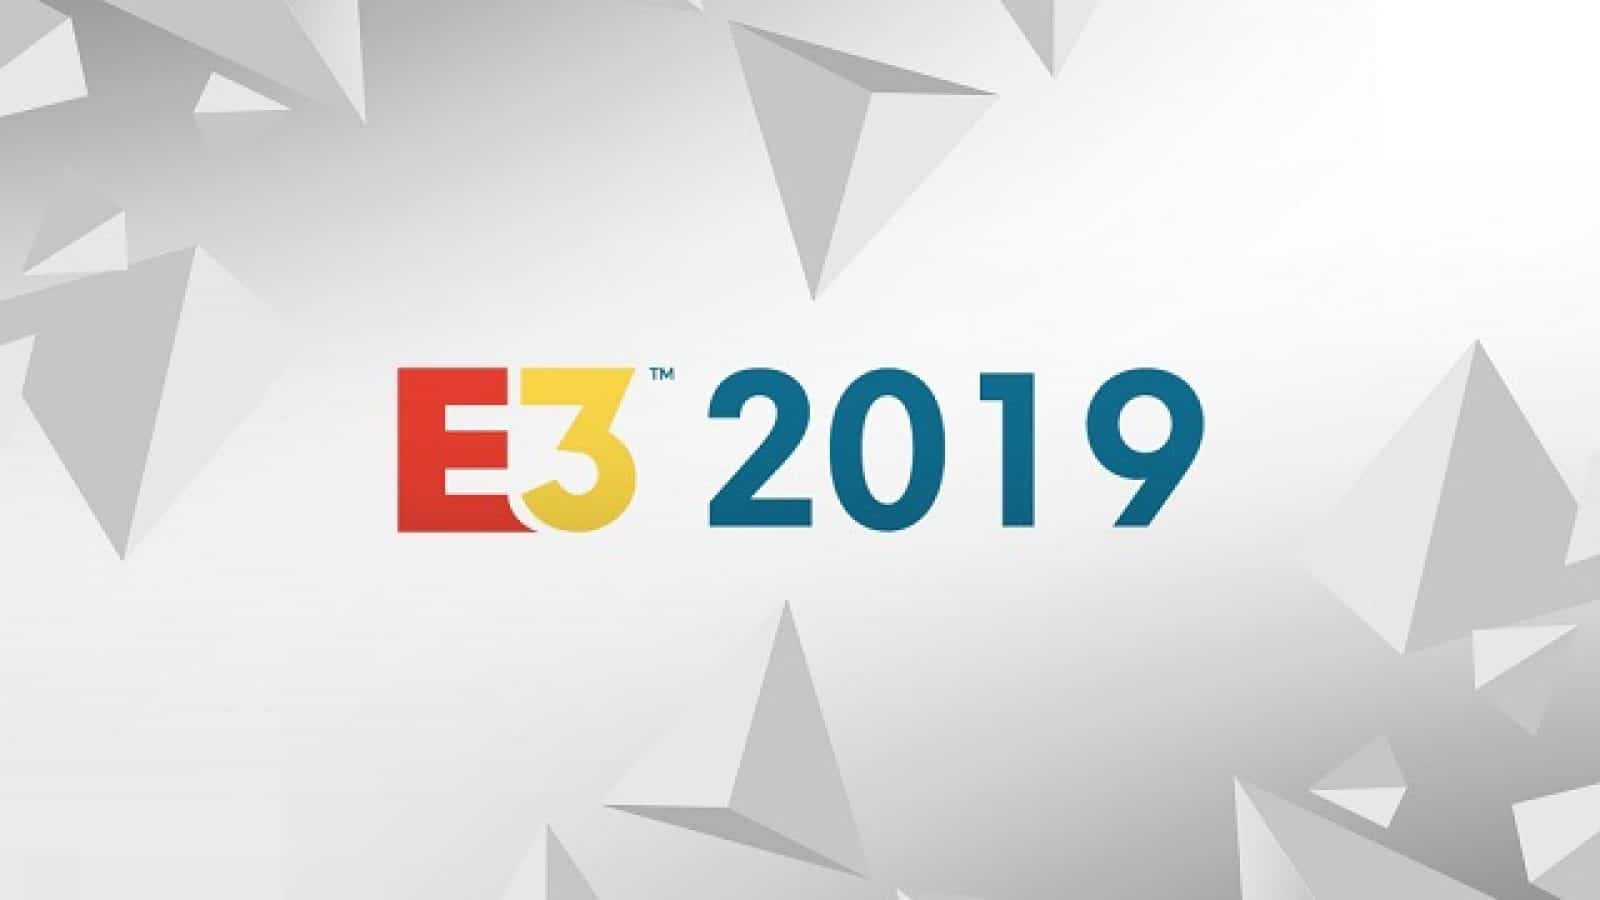 La copertina per il prossimo E3 2019 al quale parteciperà anche CD Projekt RED